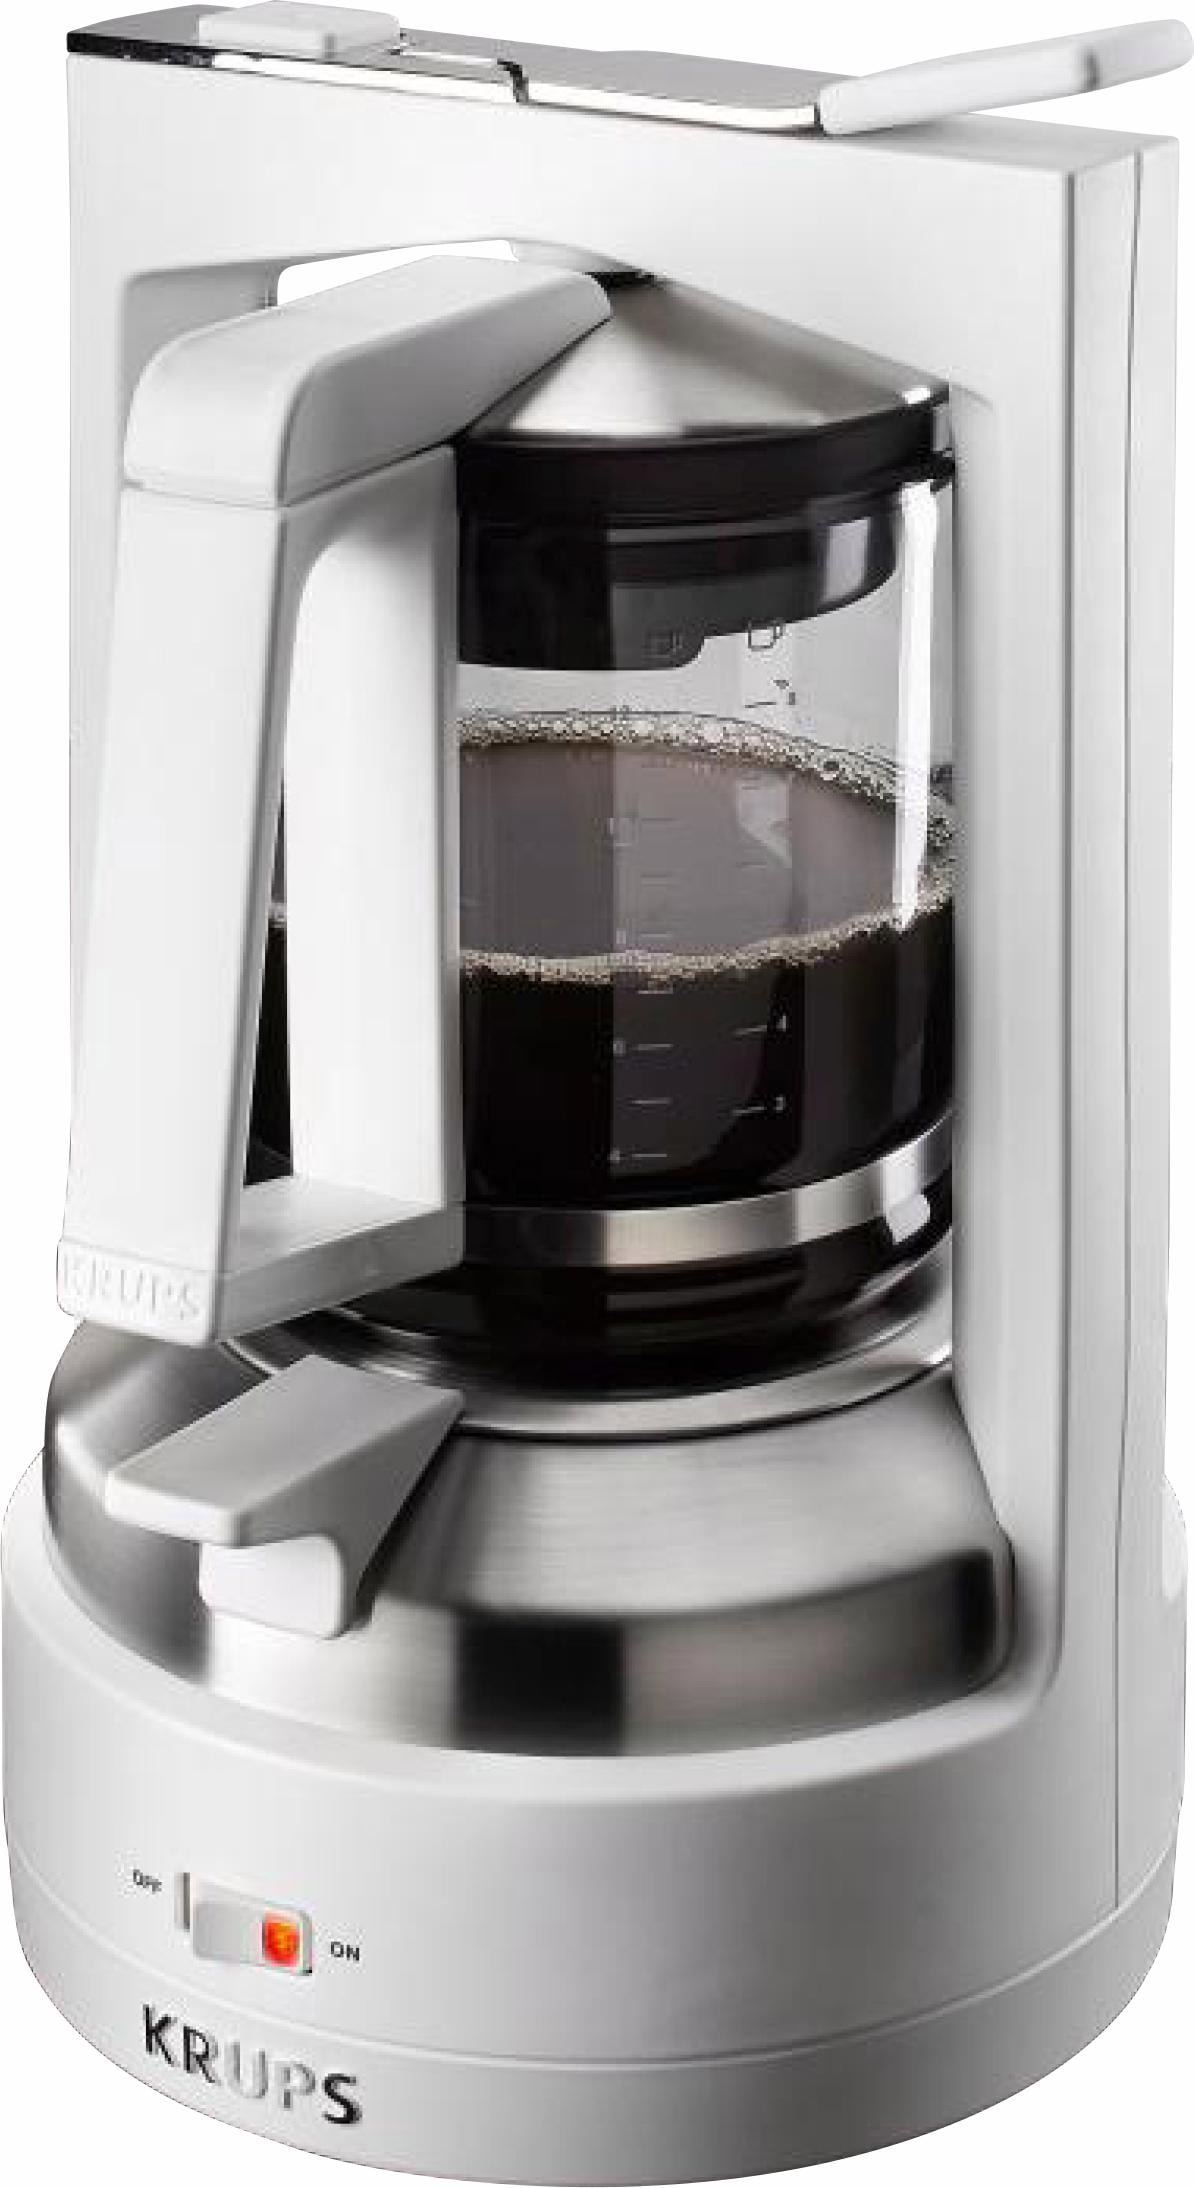 Krups Filterkaffeemaschine »KM4682 T 8.2«, 1 l Kaffeekanne, Permanentfilter, mit Druckbrühsystem